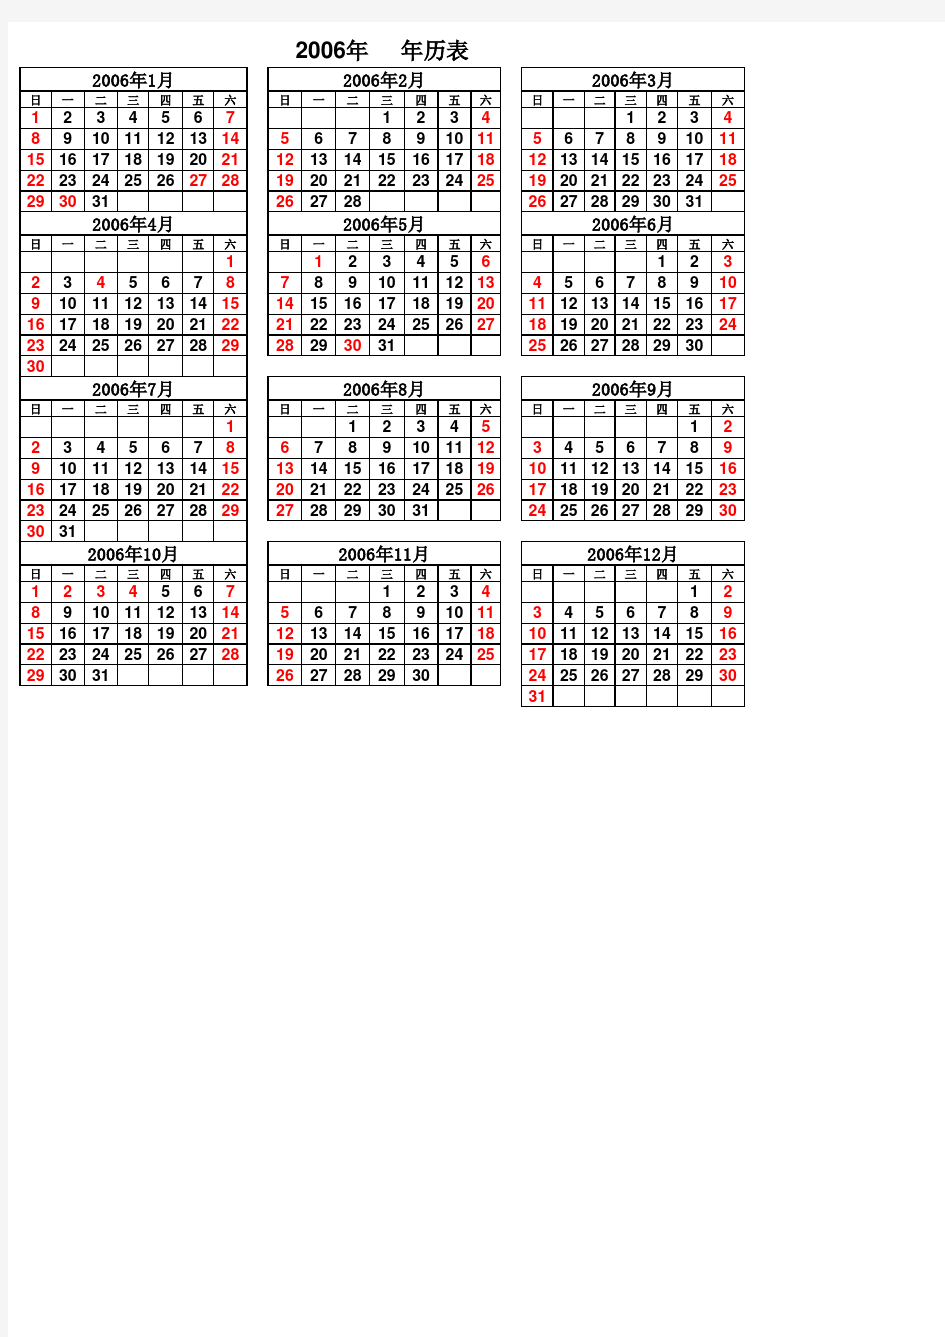 2006年日历表(含阴历)